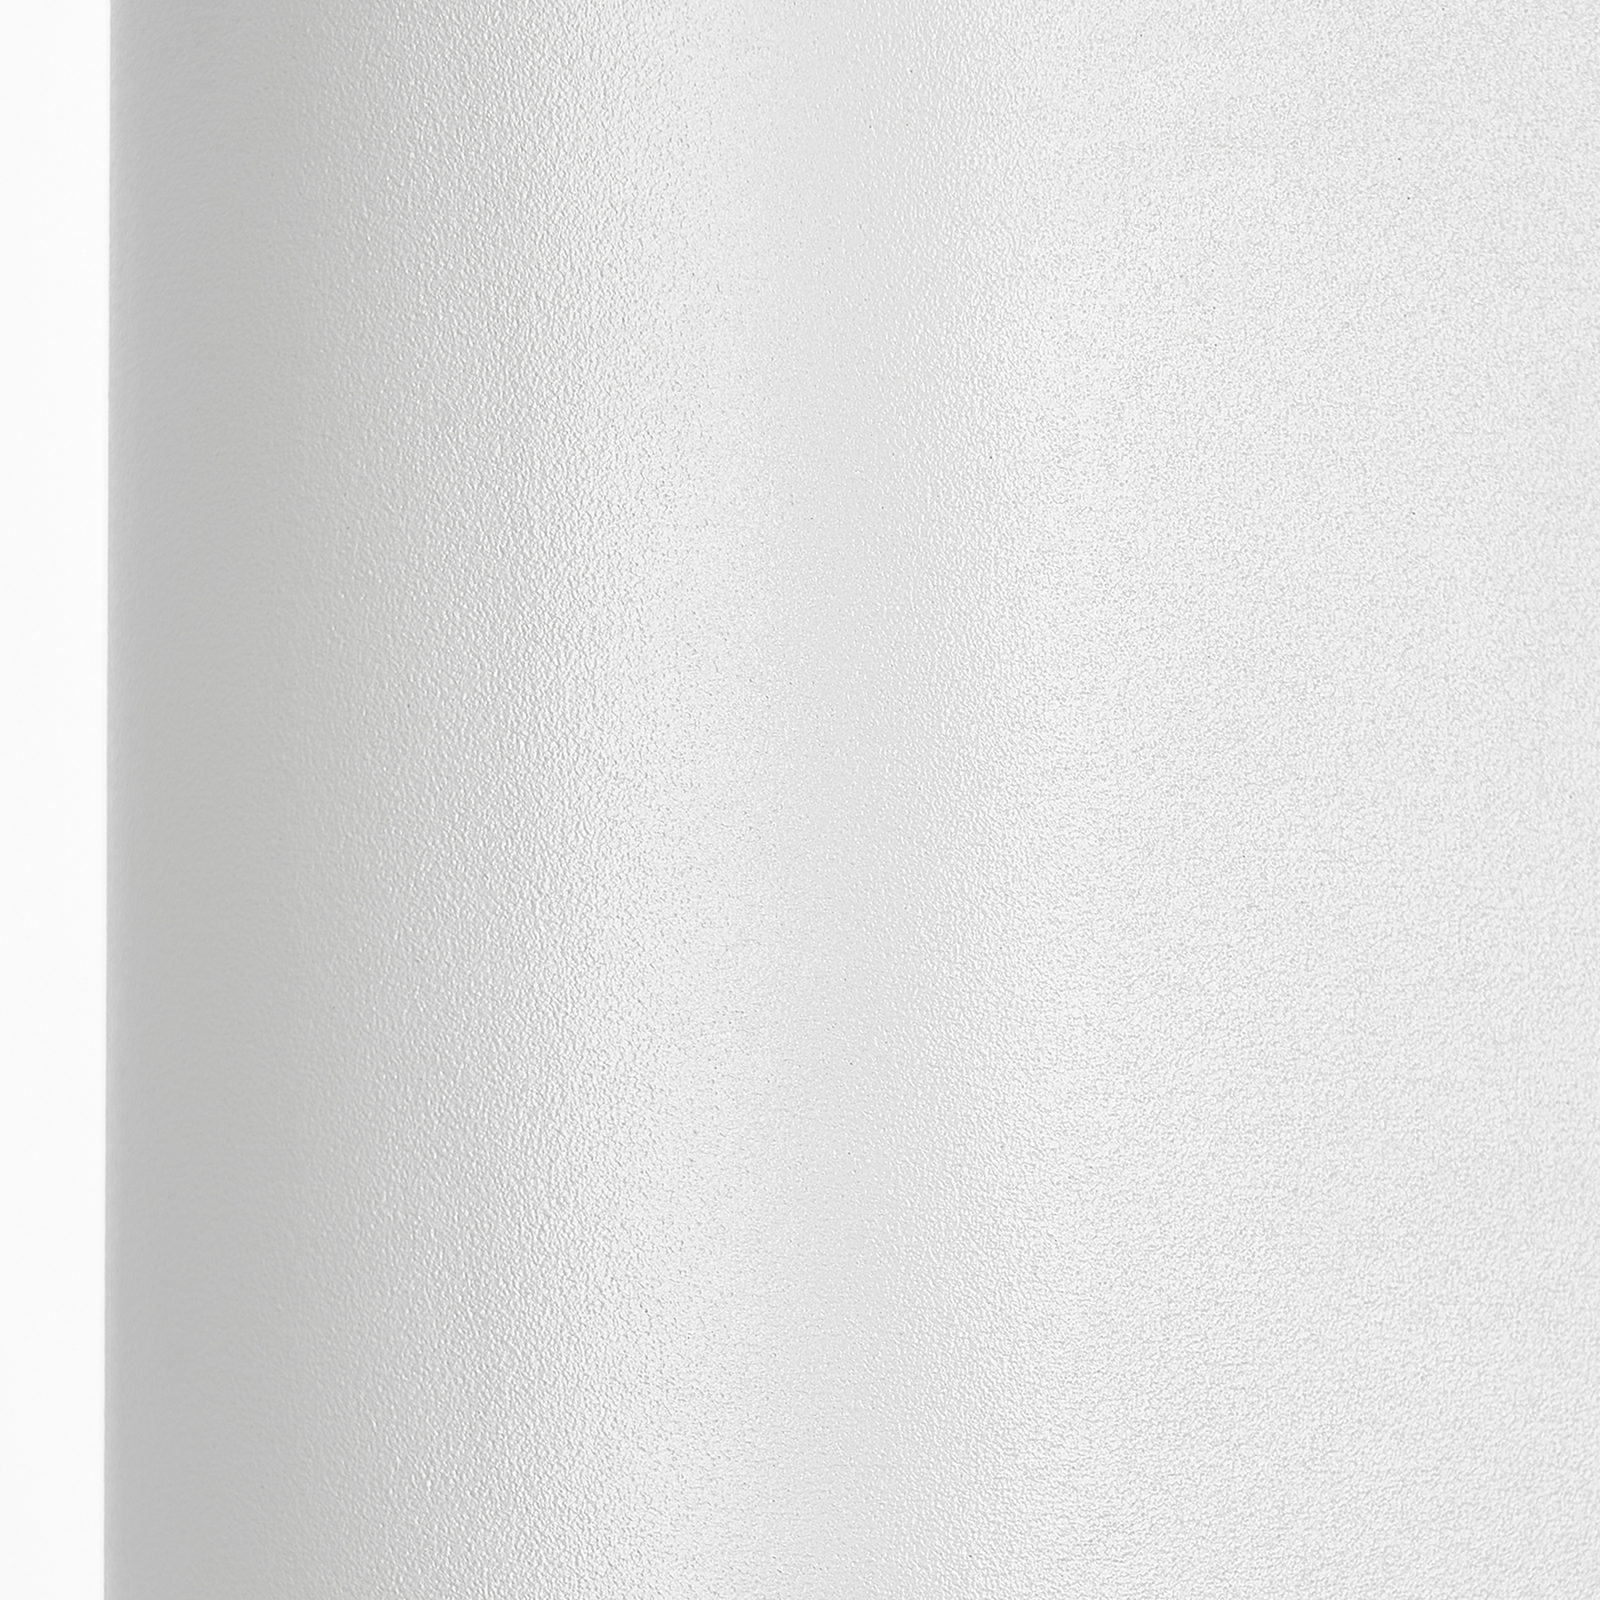 Prios applique d'extérieur Tetje, blanc, rond, 16 cm